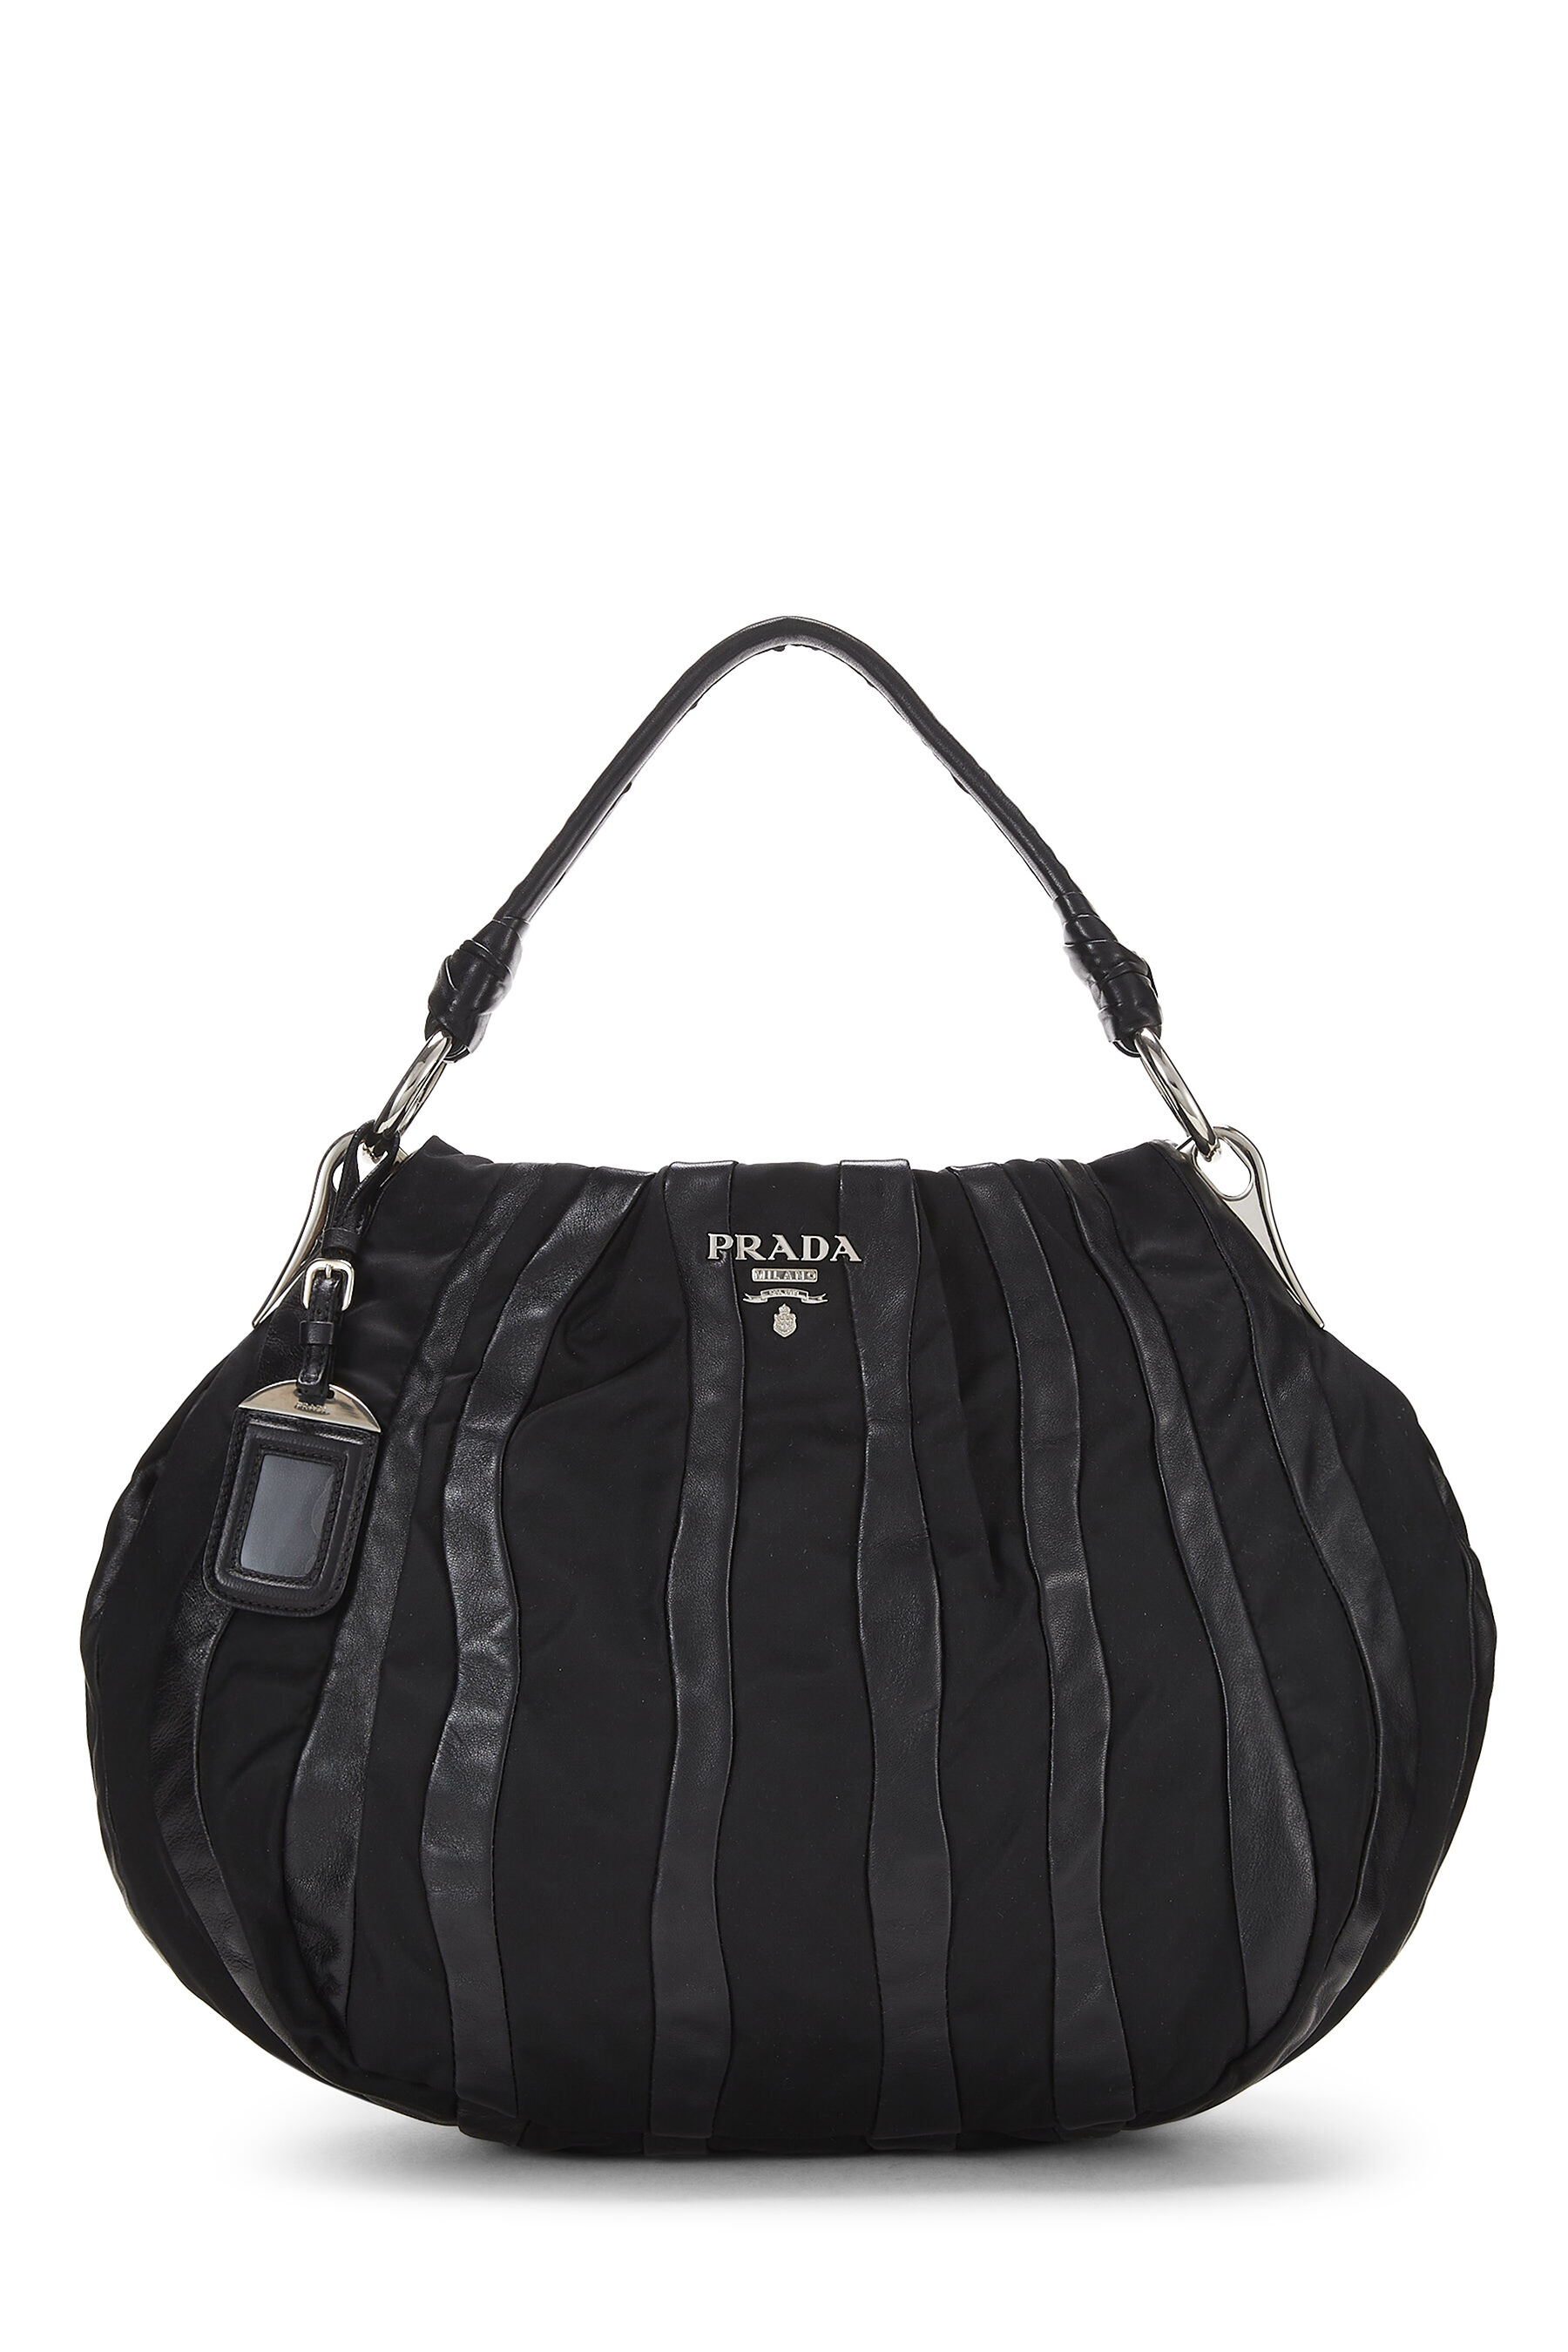 Prada Hobo Black Nylon Shoulder Bag 